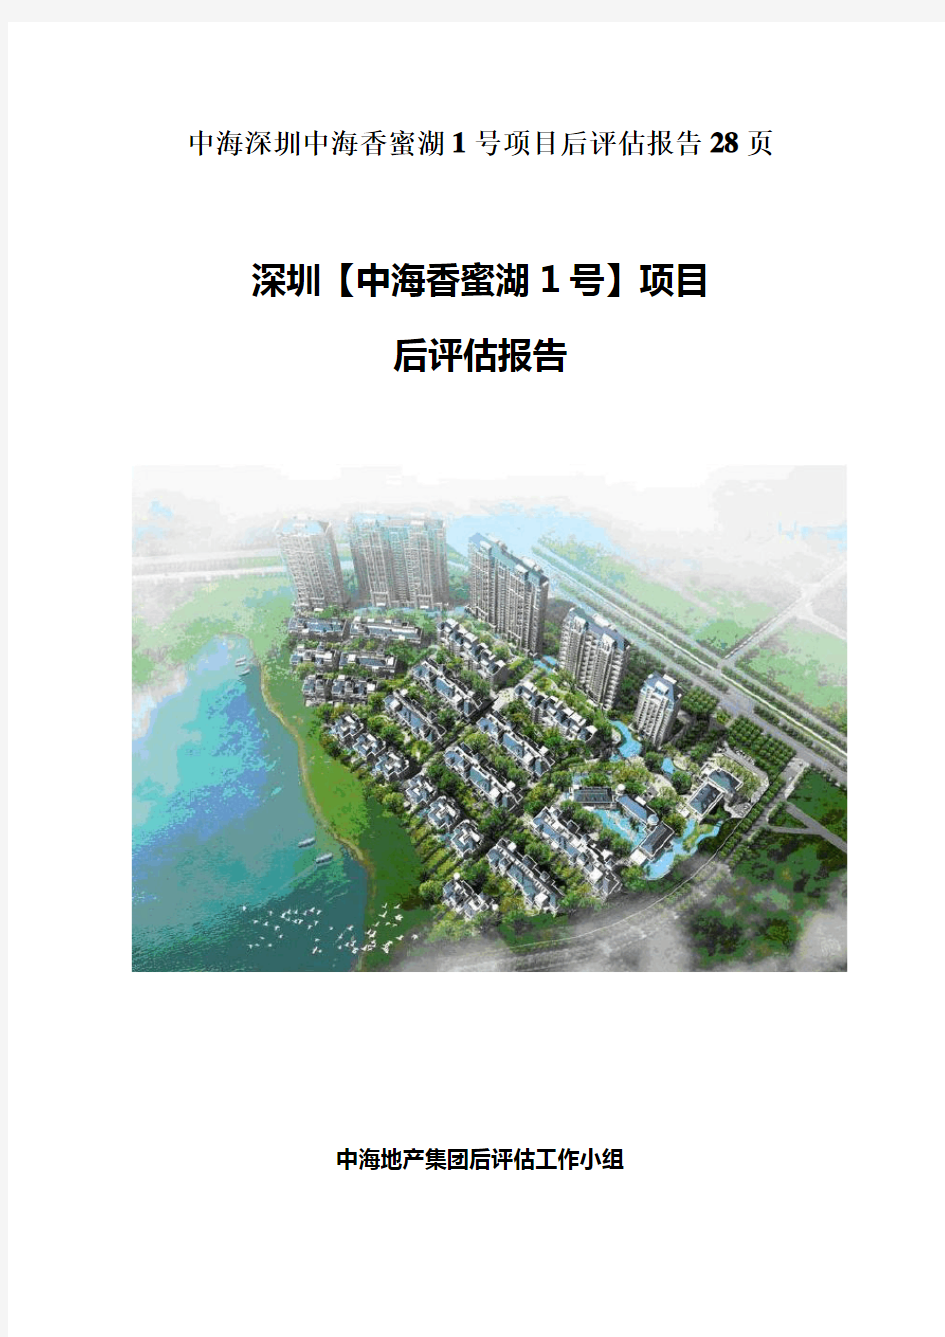 中海深圳中海香蜜湖1号项目后评估报告28页